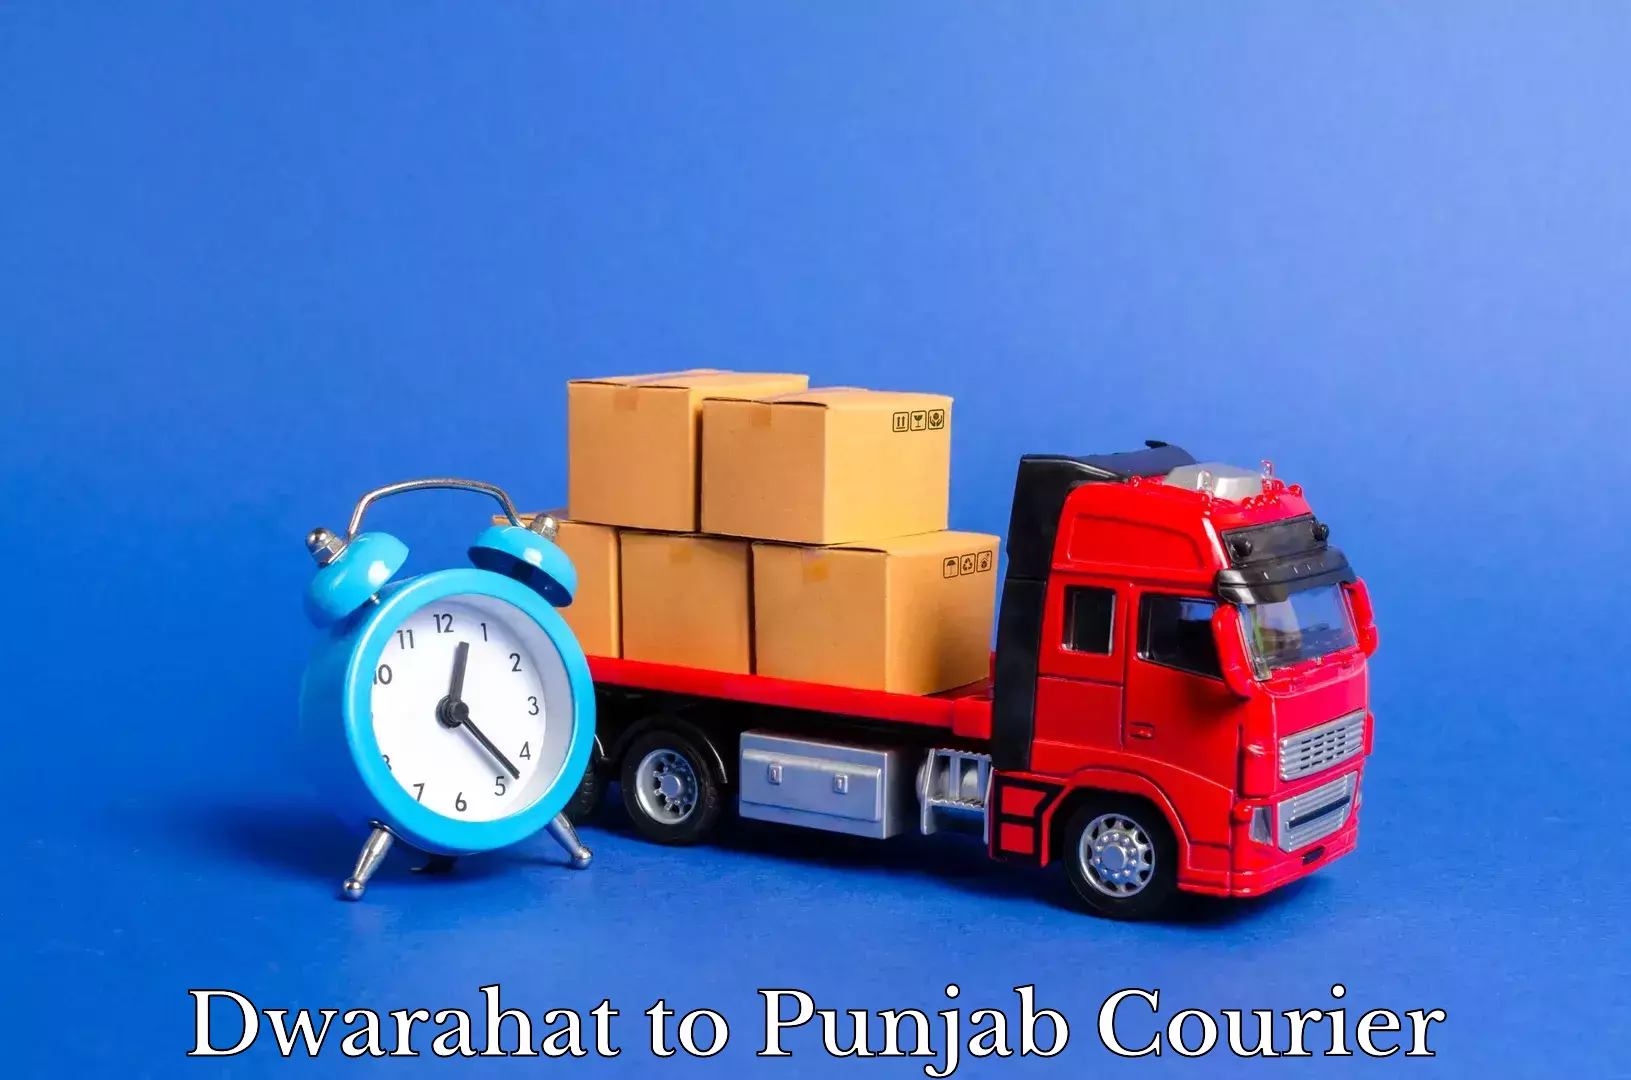 Furniture transport solutions Dwarahat to Punjab